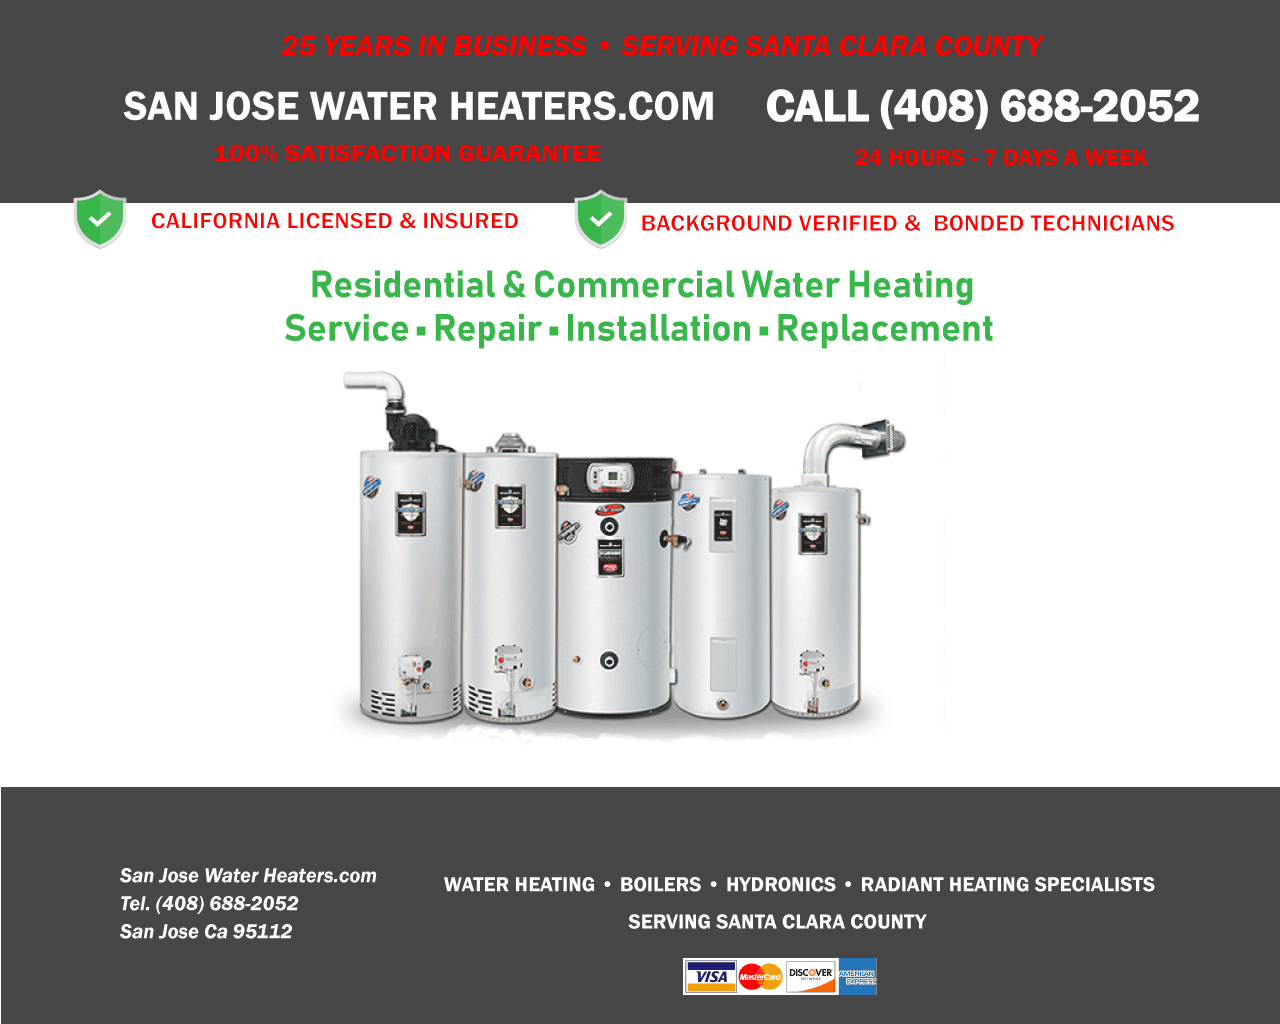 San Jose Water Heaters